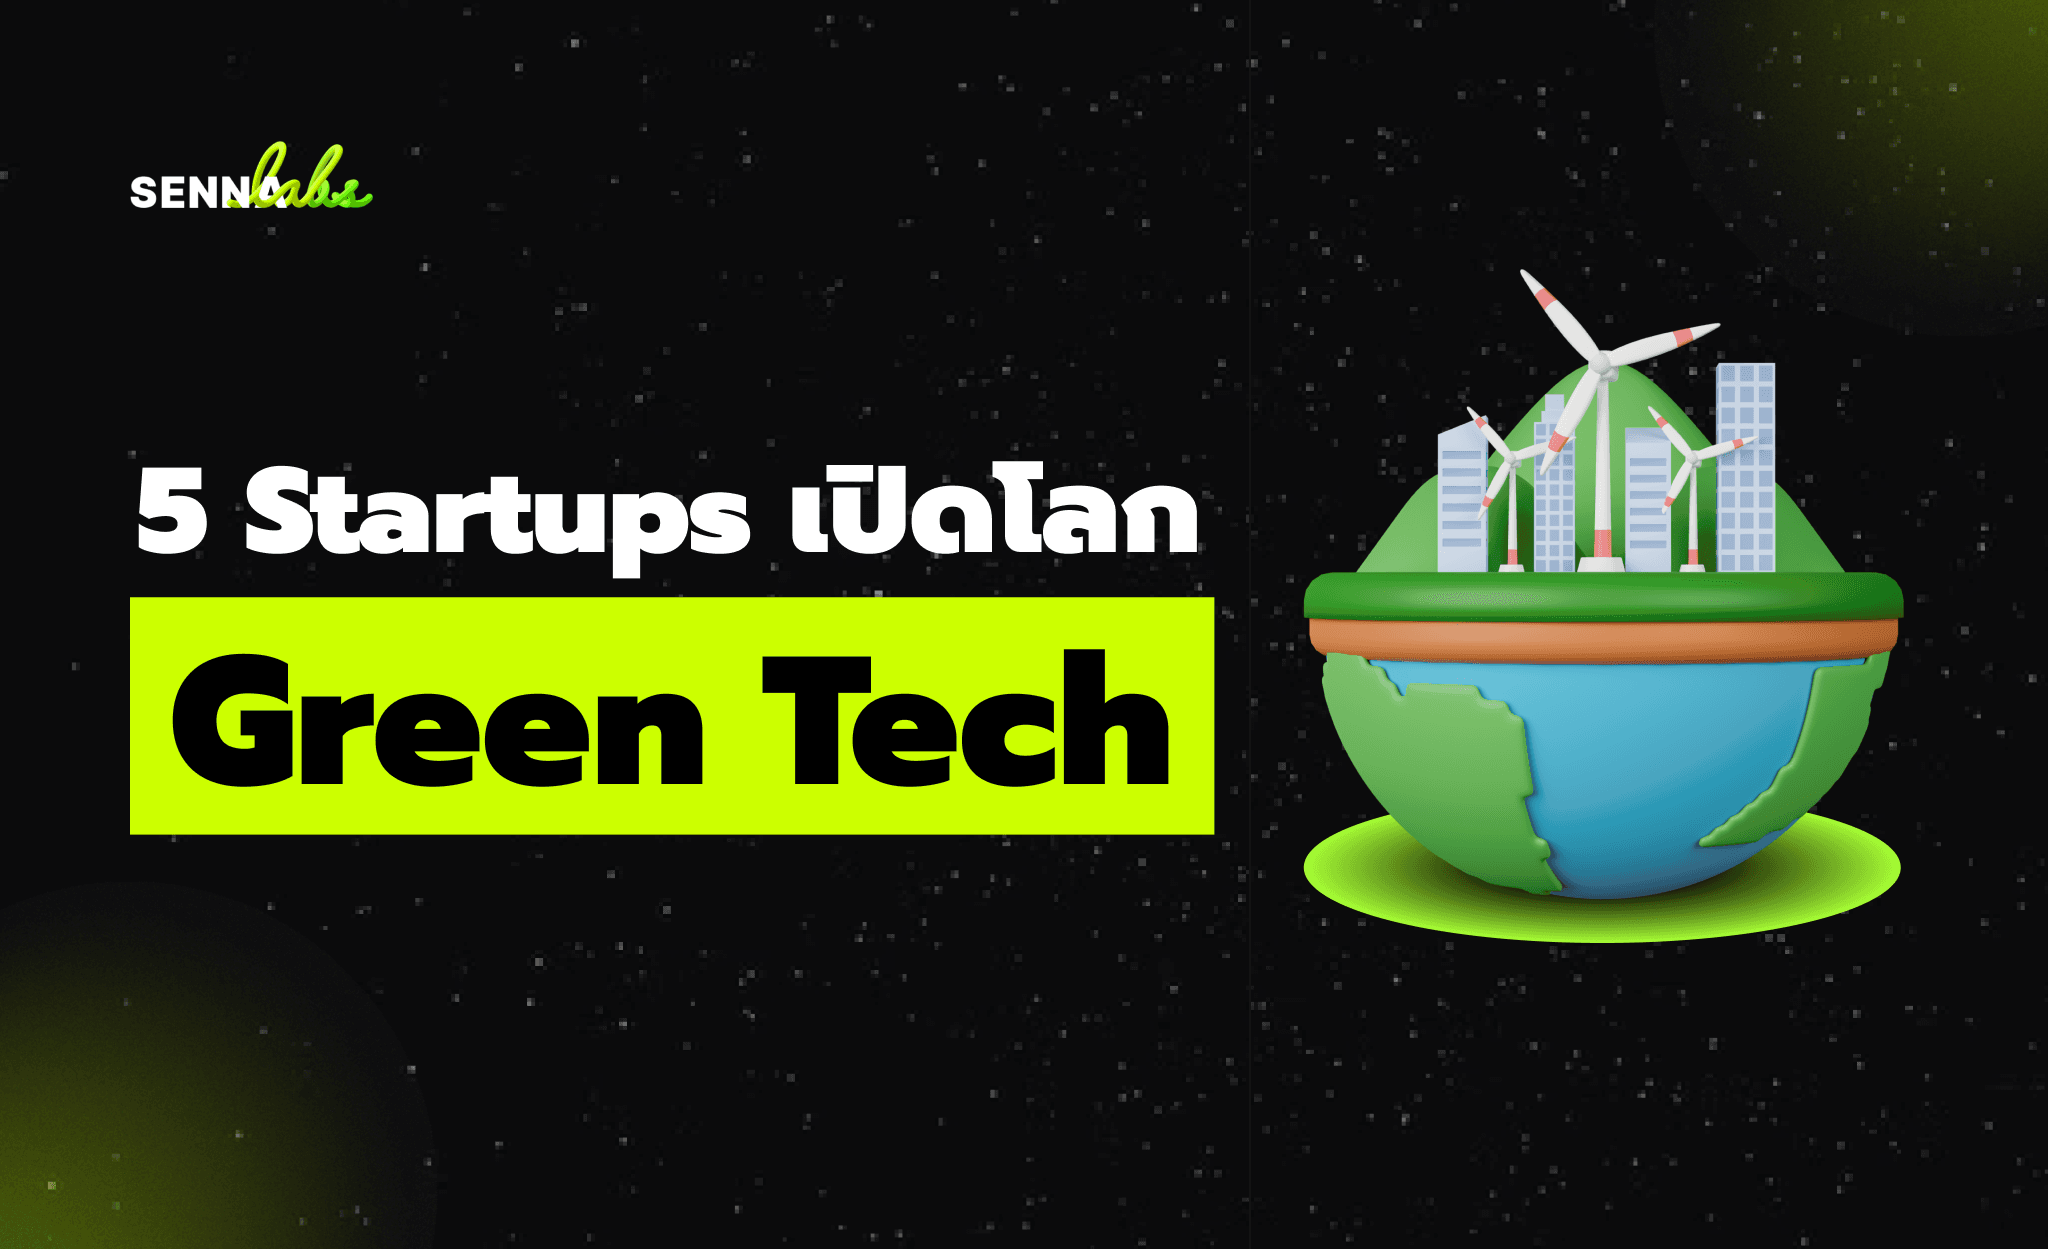 เปิดโลก Green Tech: สตาร์ทอัพสุดล้ำ เปลี่ยนโลกด้วยเทคโนโลยีสีเขียว